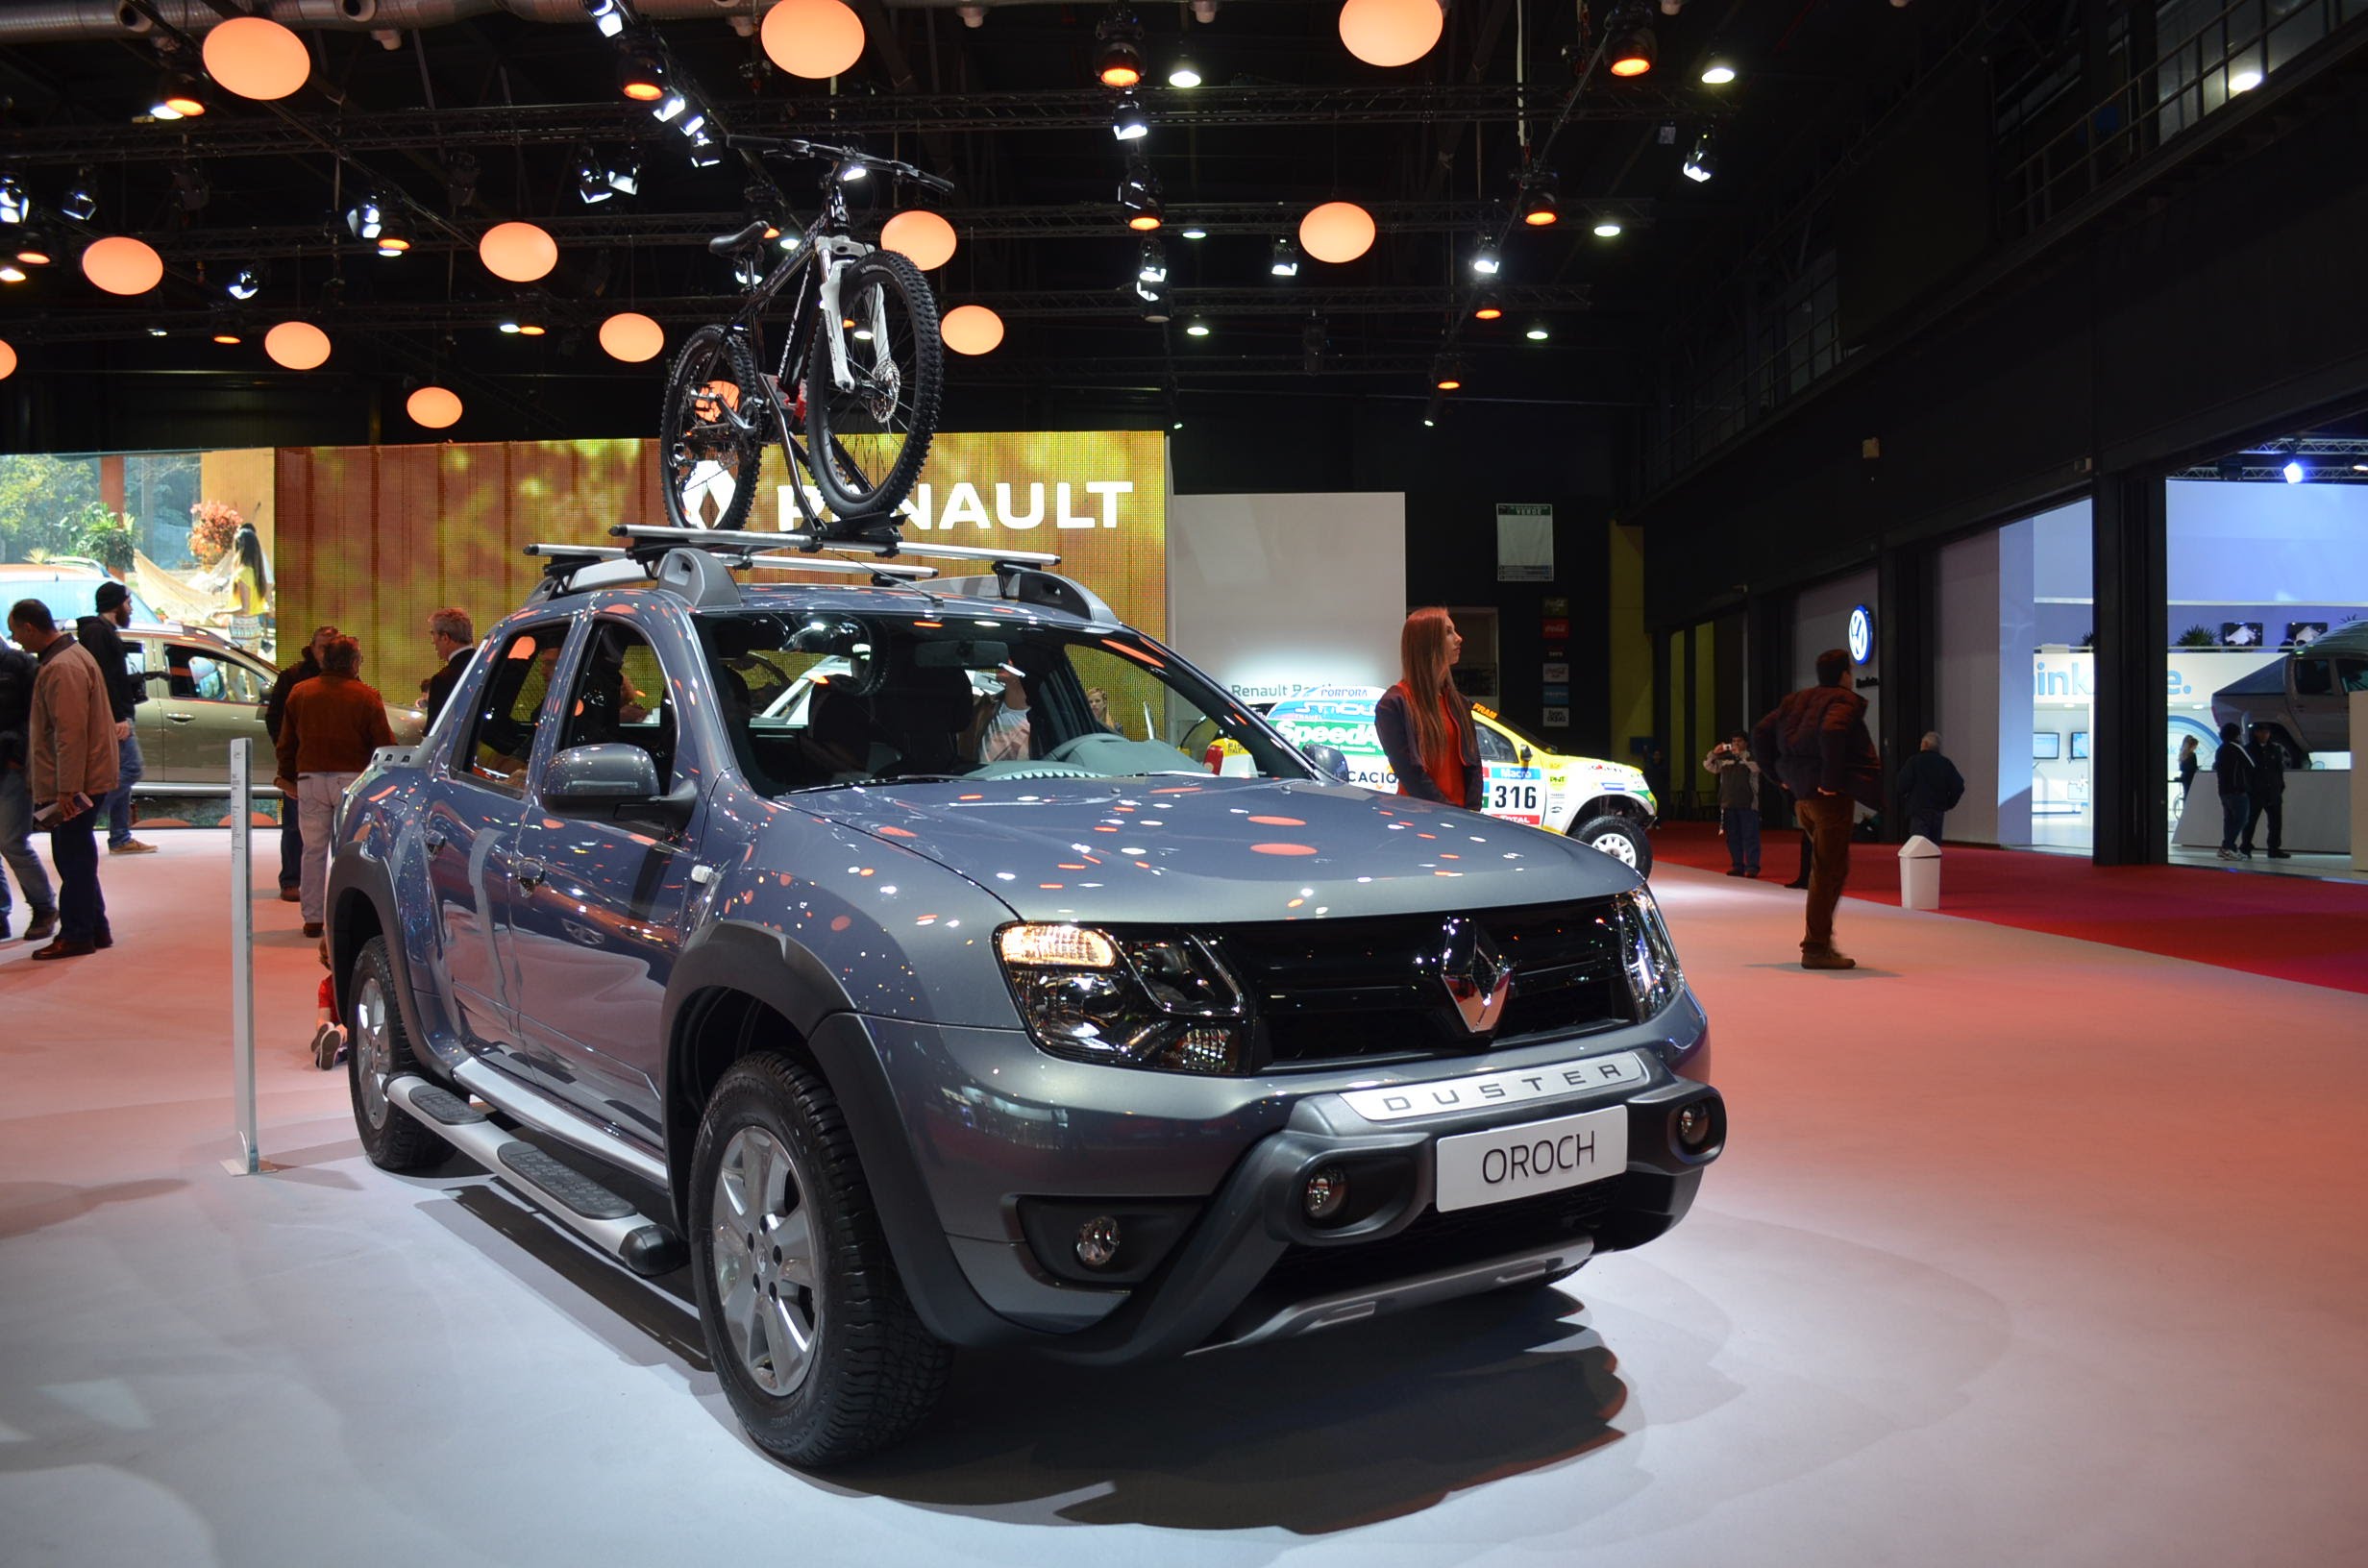 Mirá el video de la Duster Oroch y las novedades que trae Renault hasta 2016